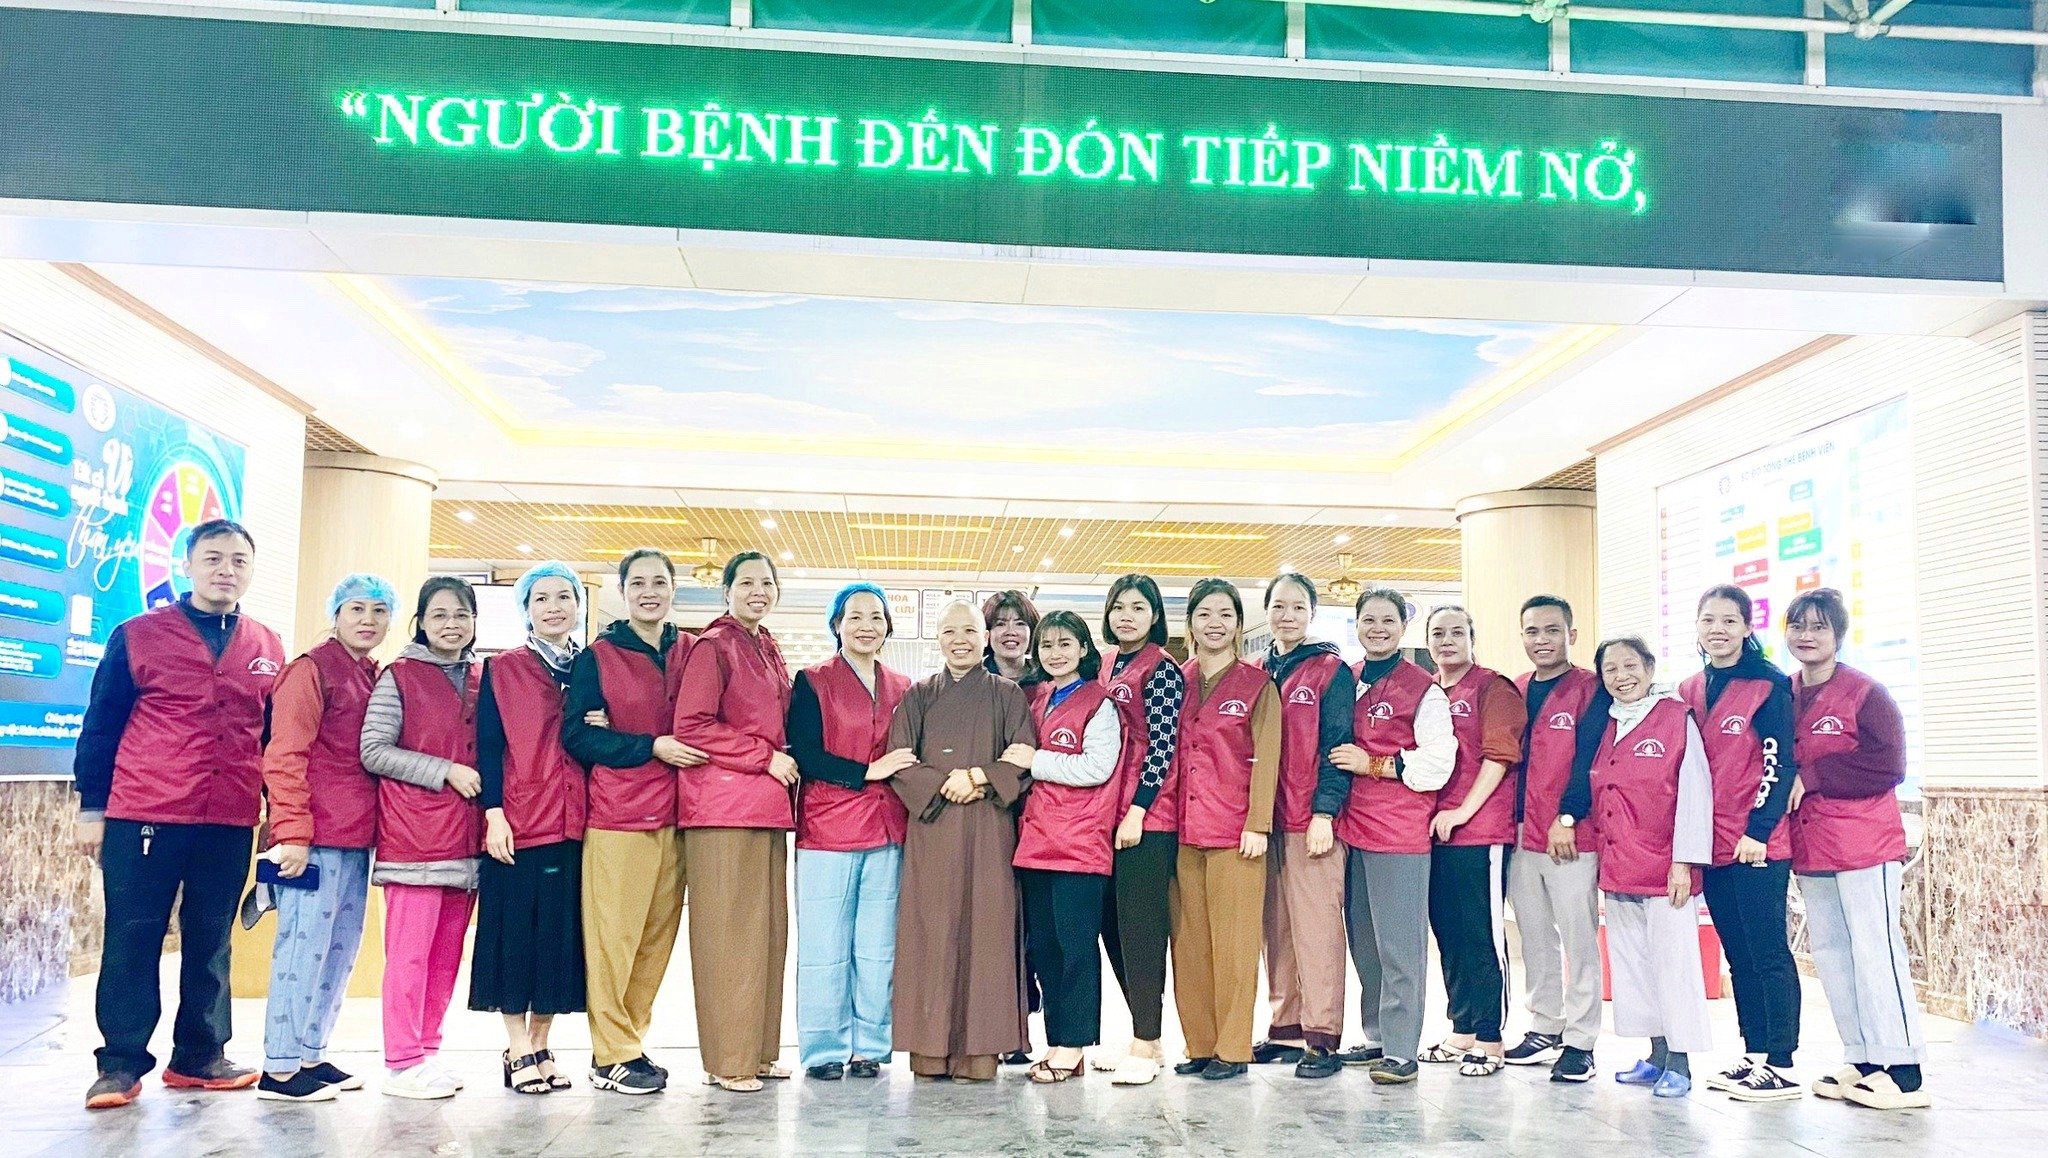 Sư thầy Hải Minh trụ trì chùa Linh Sơn tỉnh Vĩnh Phúc và các nhà hảo tâm hỗ trợ 1.000 suất chào hàng tuần cho toàn bộ người bệnh điều trị tại Bệnh viện